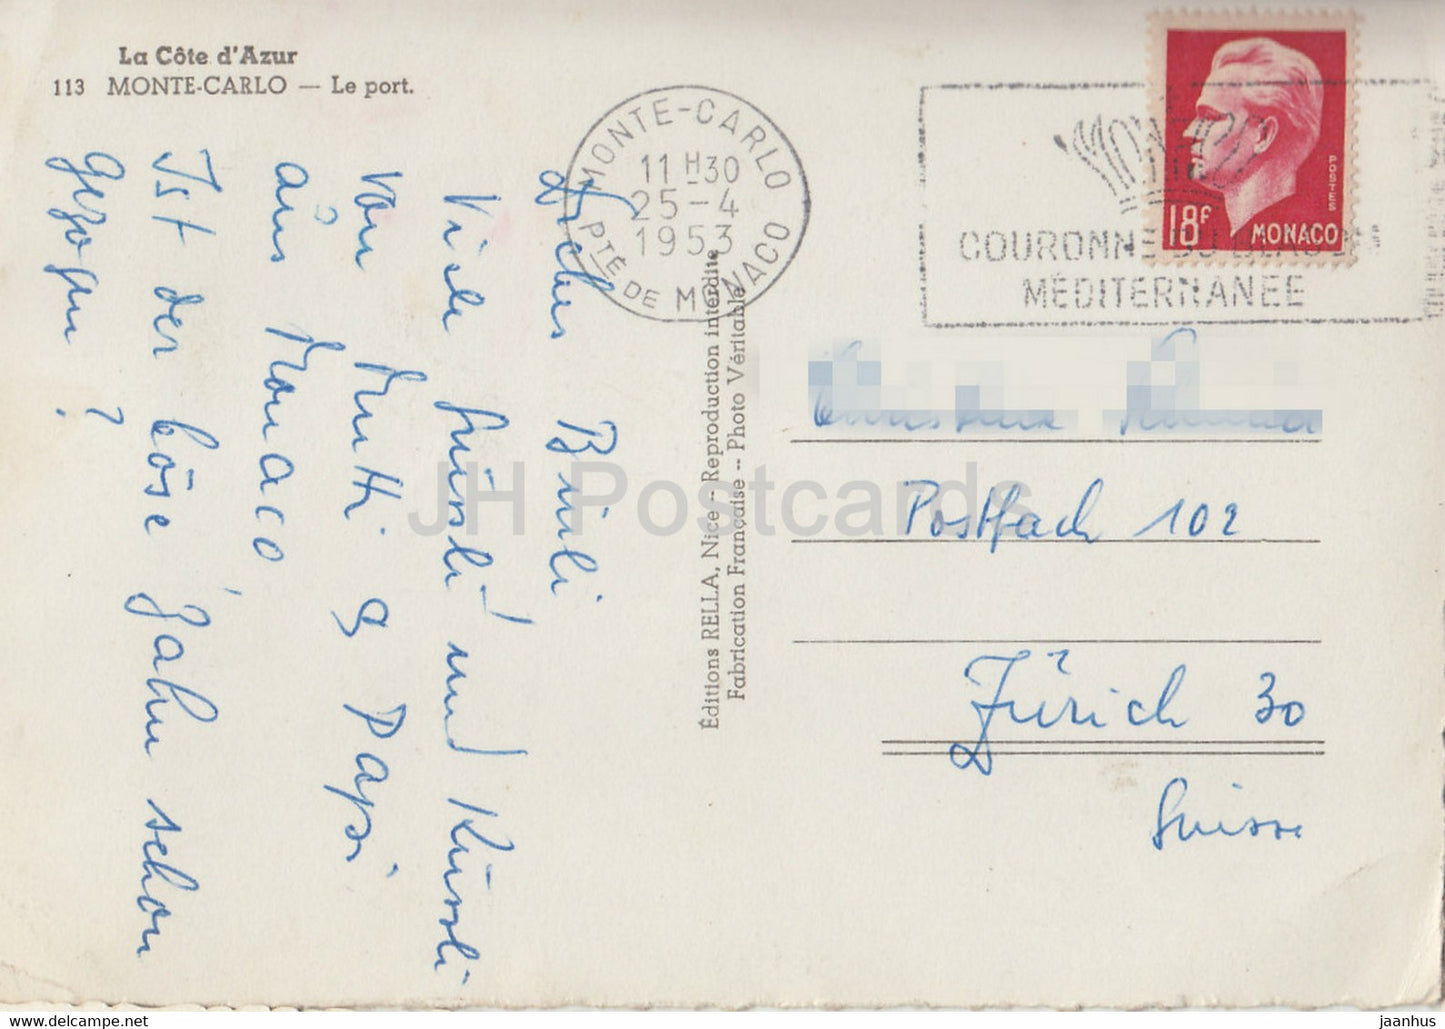 Monte Carlo - Le Port - 113 - carte postale ancienne - 1953 - Monaco - occasion